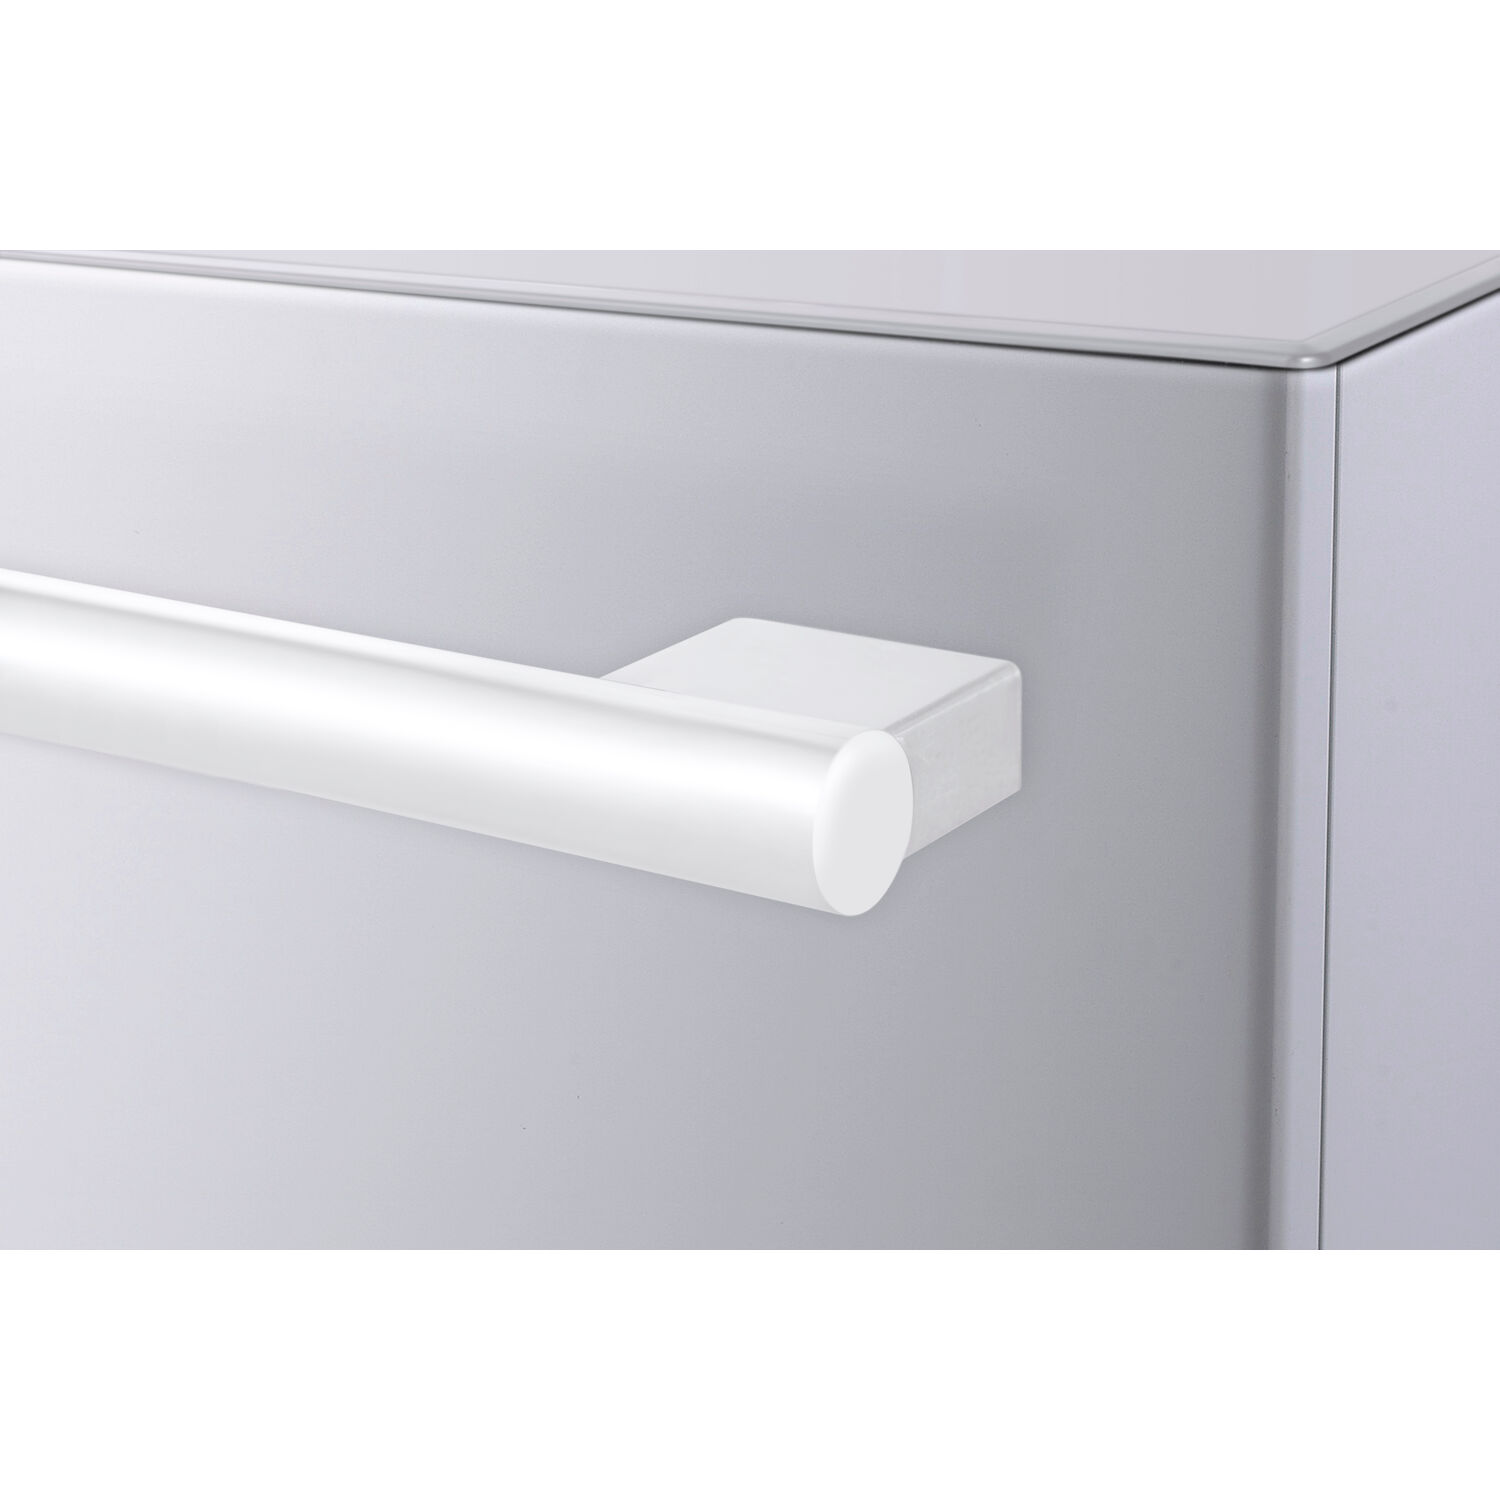 Galanz 16 cu. ft. 3-Door French Door Refrigerator, White, 28.35" Wide - image 3 of 6